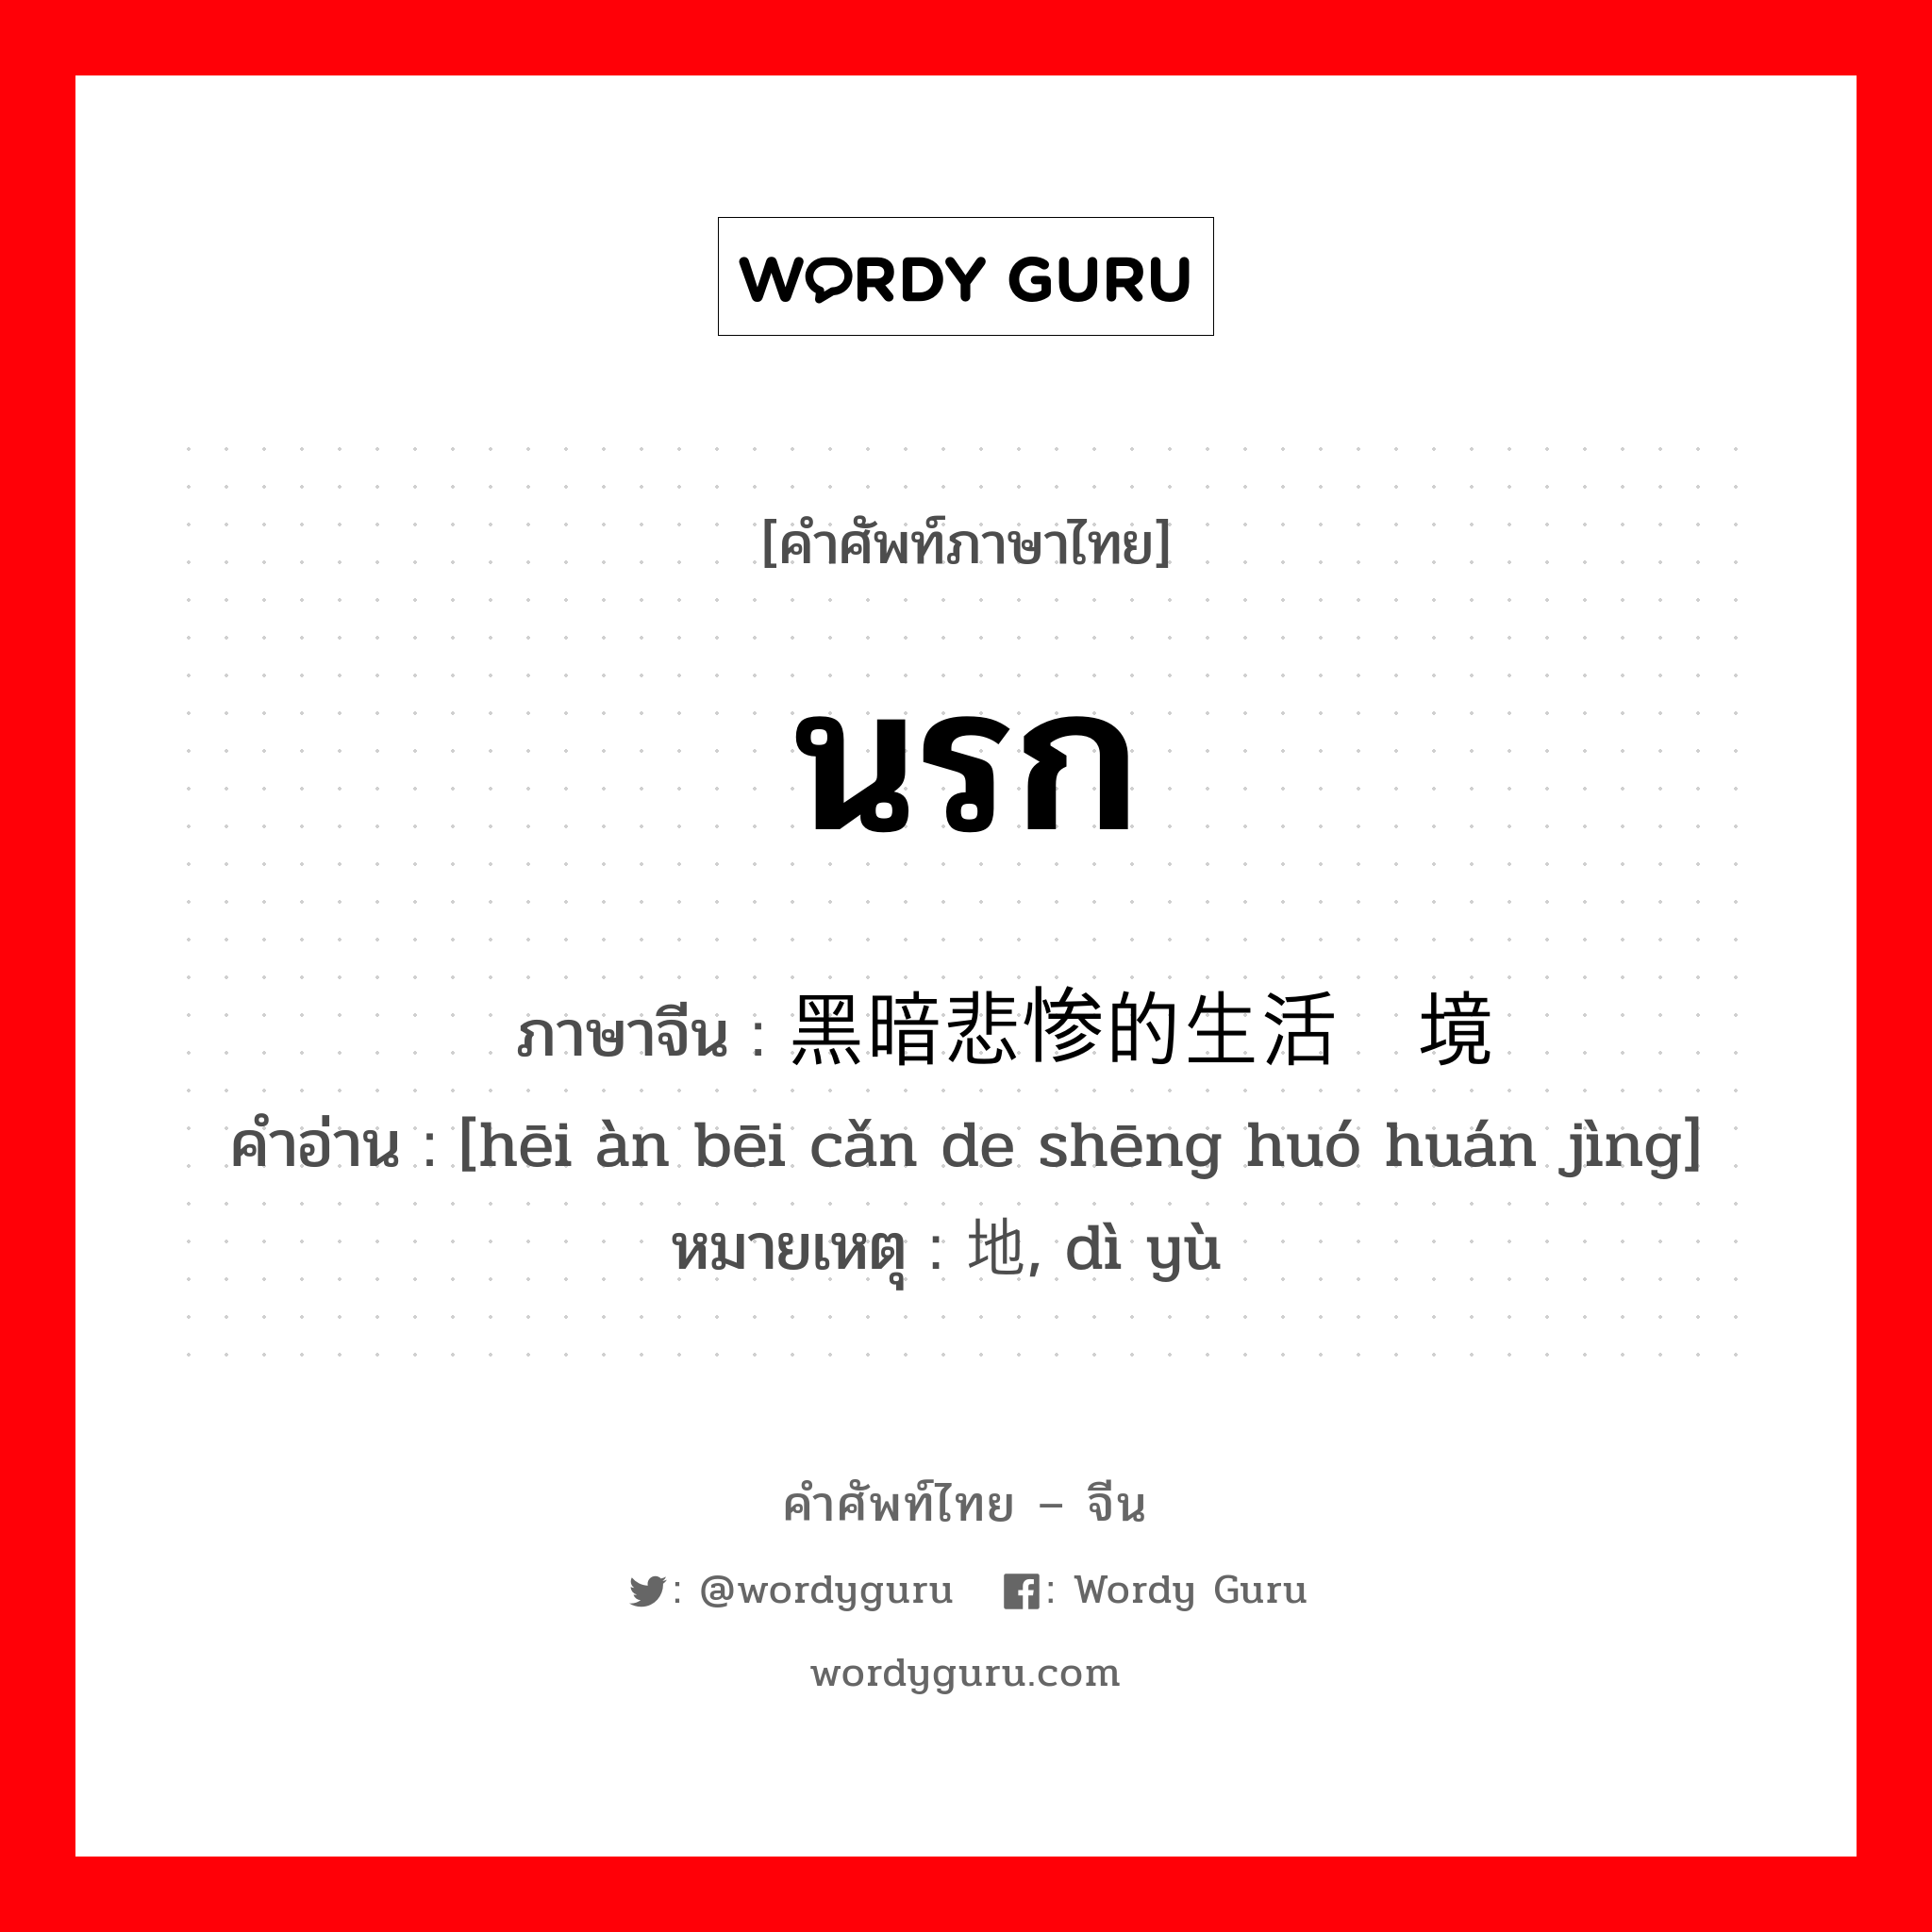 นรก ภาษาจีนคืออะไร, คำศัพท์ภาษาไทย - จีน นรก ภาษาจีน 黑暗悲惨的生活环境 คำอ่าน [hēi àn bēi cǎn de shēng huó huán jìng] หมายเหตุ 地狱, dì yù